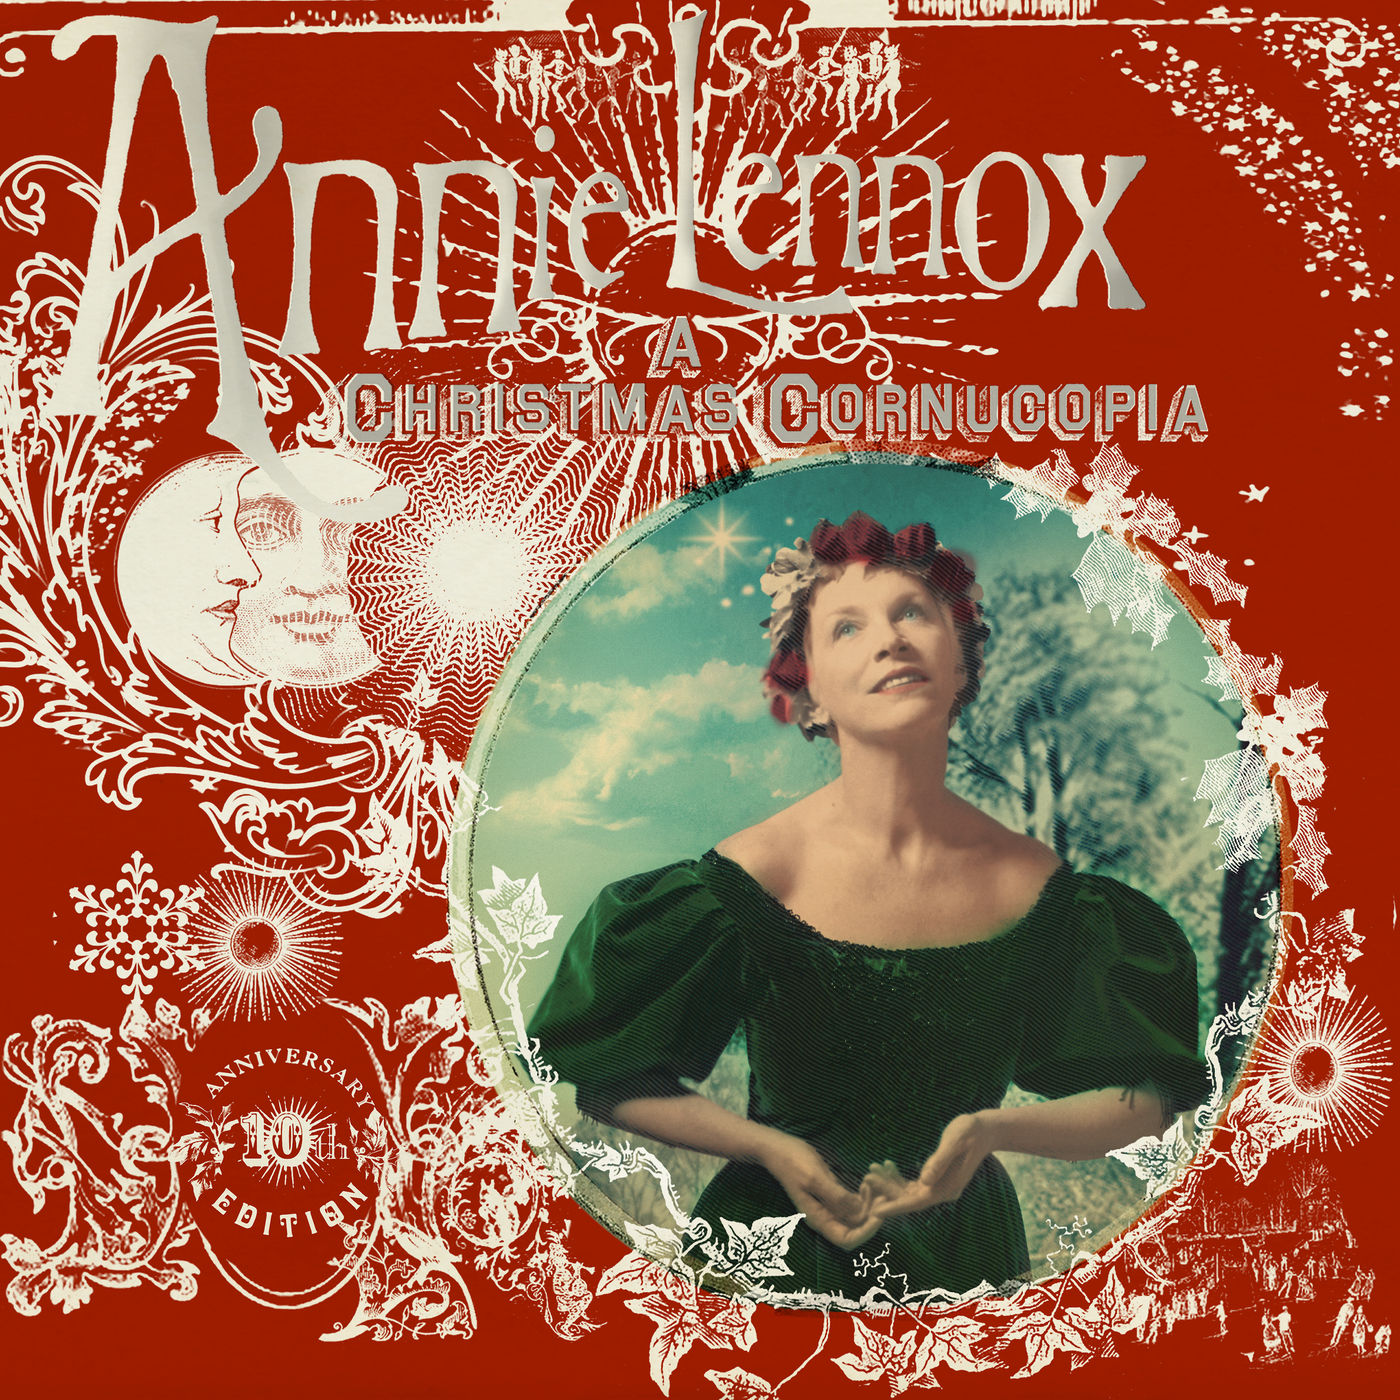 Annie Lennox – A Christmas Cornucopia (10th Anniversary Edition) (2020) [FLAC 24bit/96kHz]